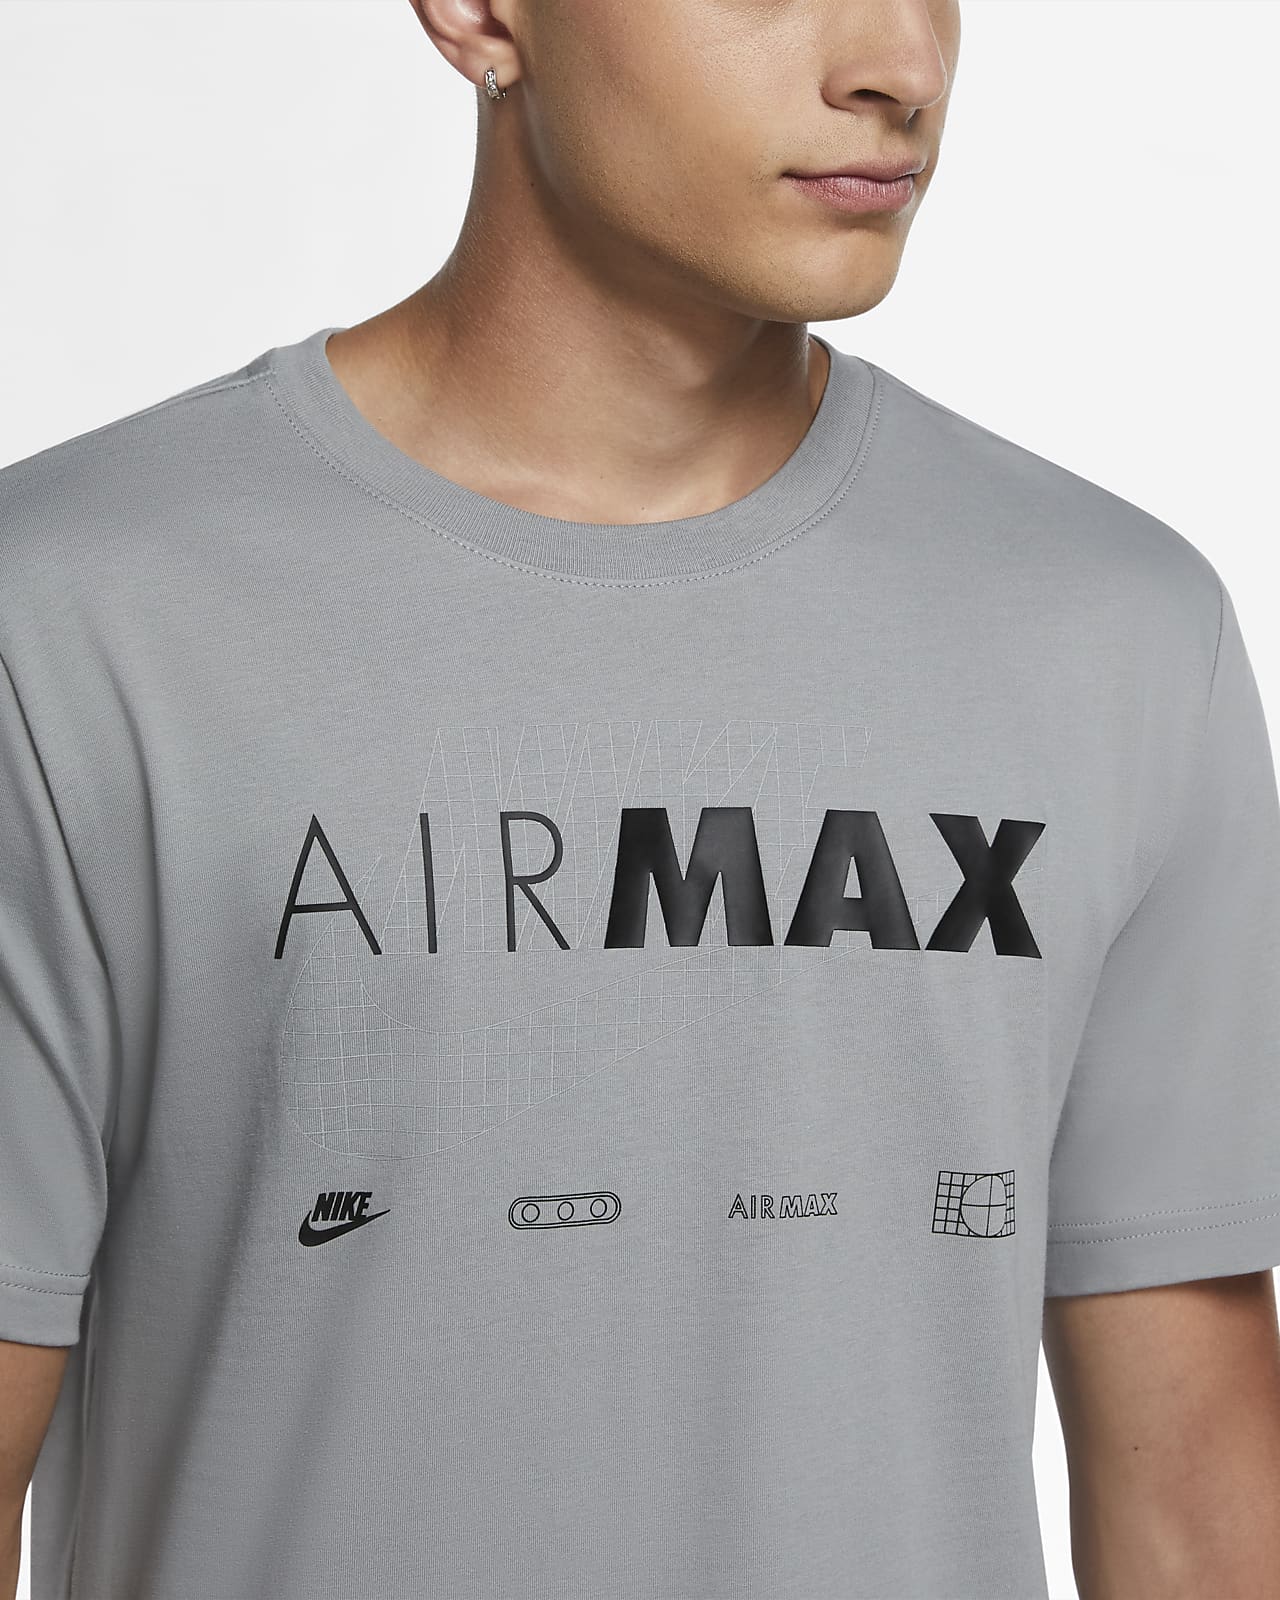 air max t shirt